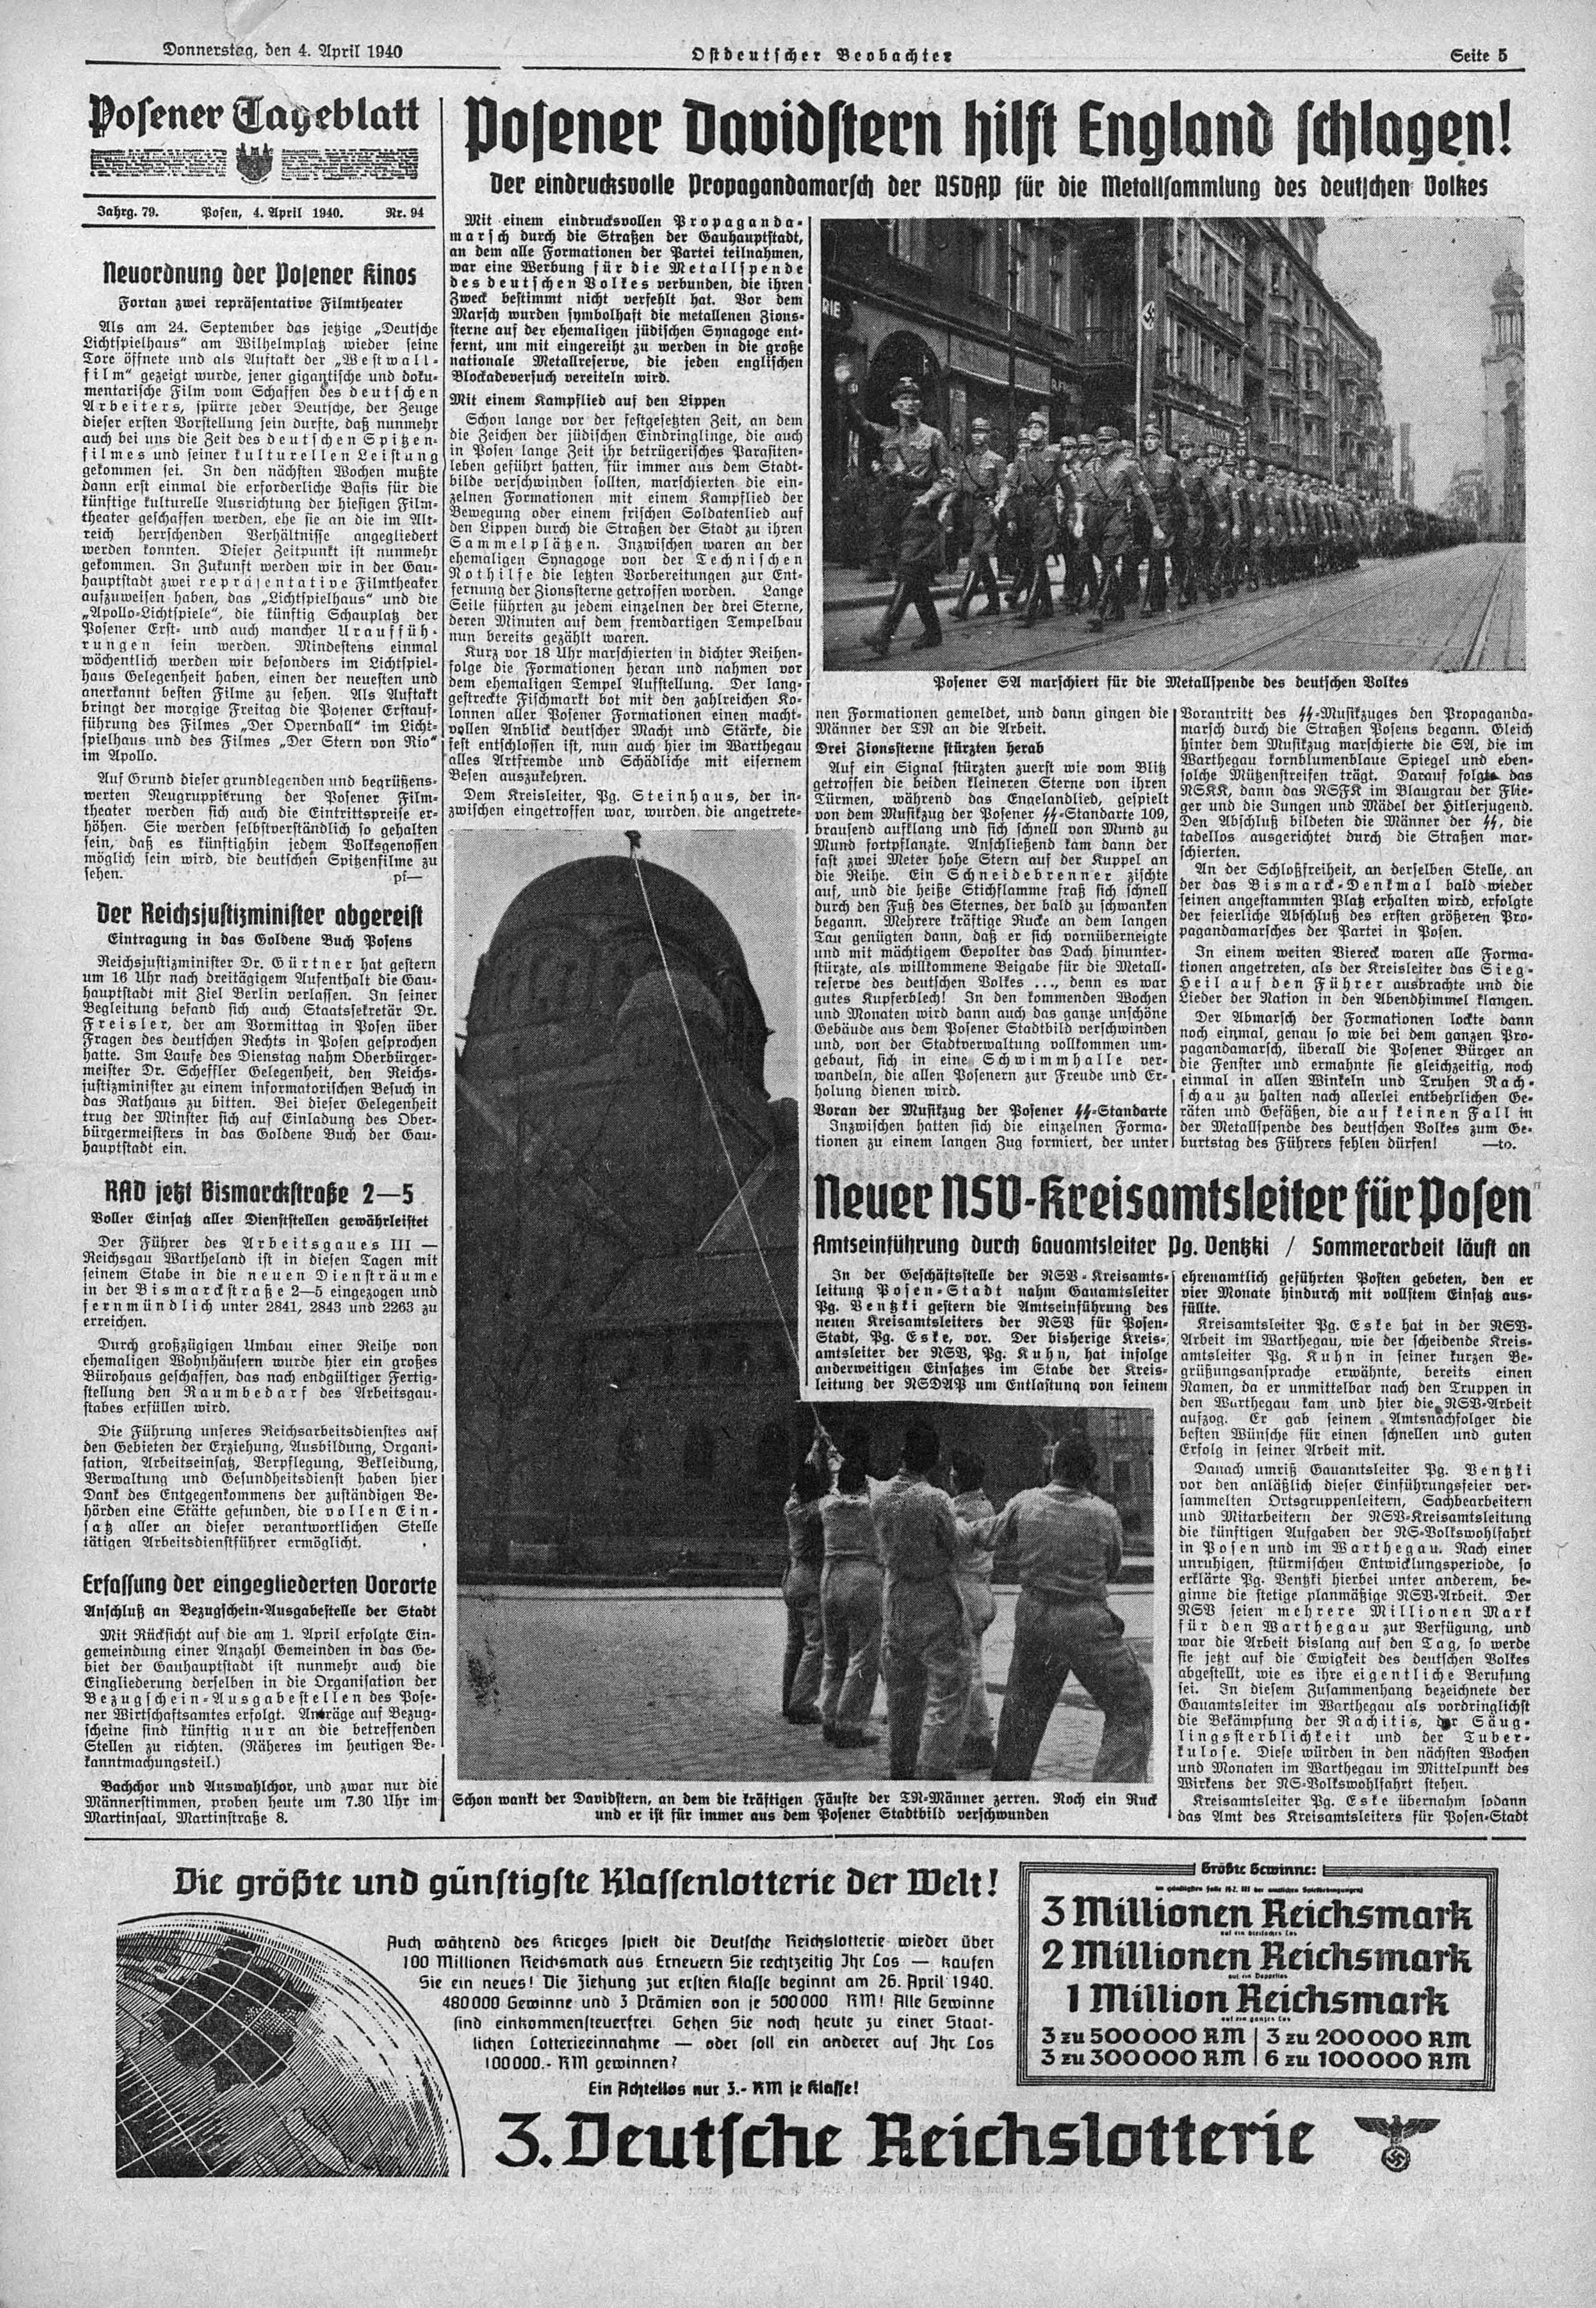 strona starej niemieckiej gazety, na fotografii hitlerowcy zrzucają gwiazdę Dawida z kopuły synagogi z